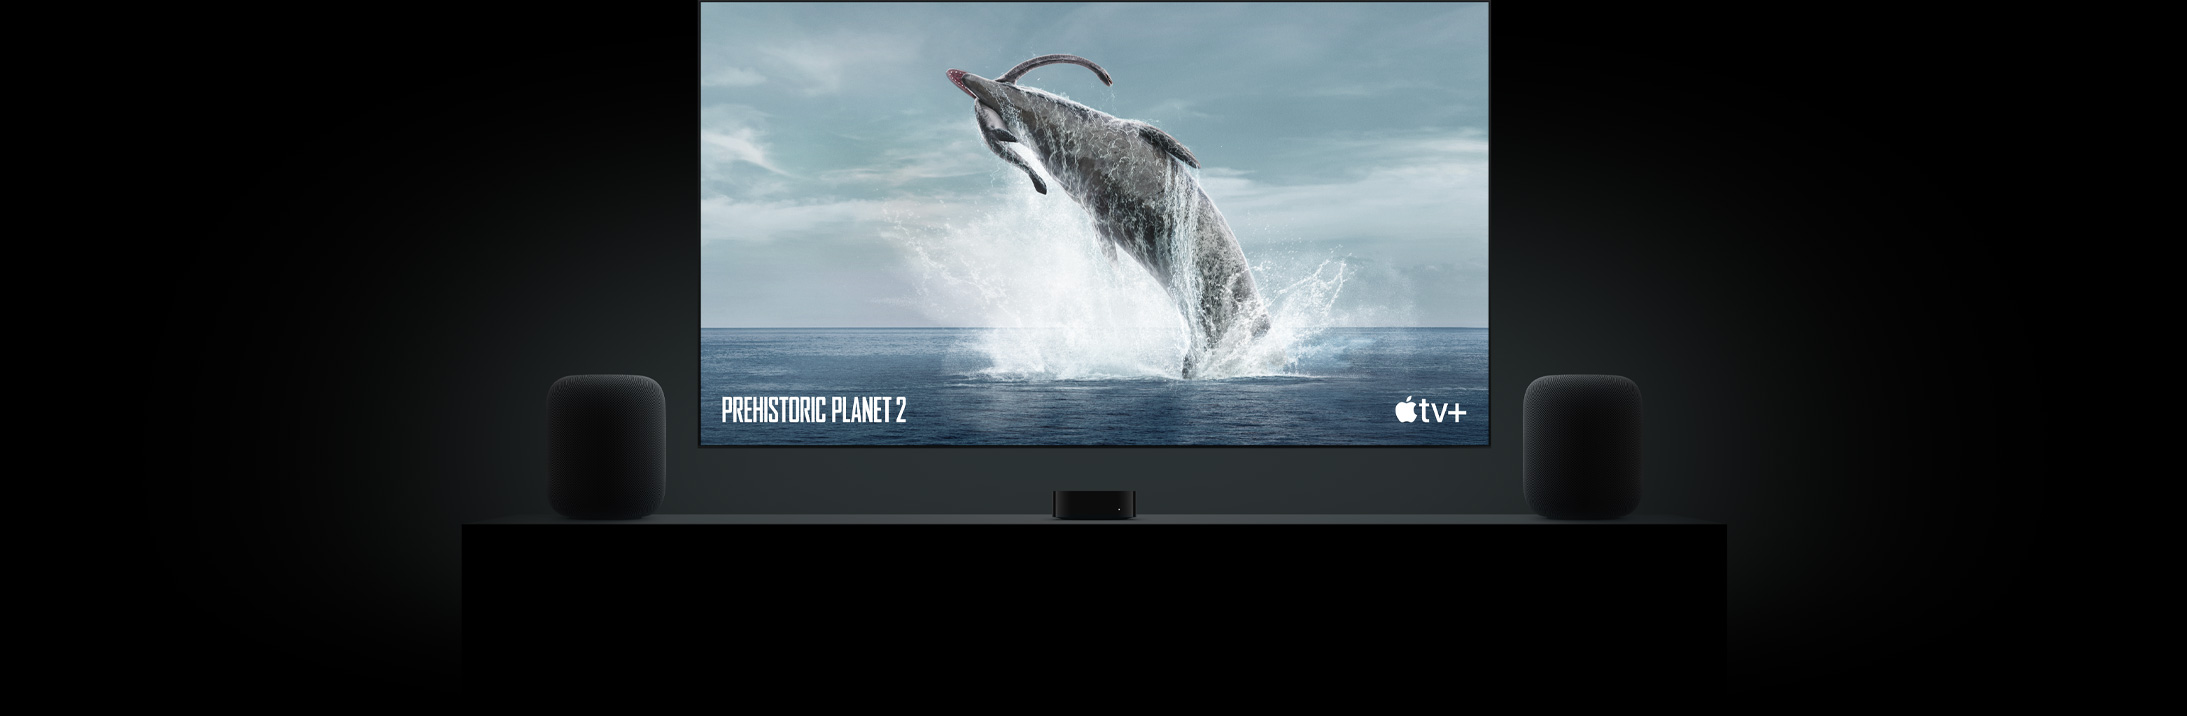 Großer Flatscreen Fernseher mit einem lebensechten Bild eines Dinosauriers aus „Ein Planet vor unserer Zeit“. Der Fernseher hängt über einem Apple TV mit HomePod Lautsprechern links und rechts, die auf einer Wohnzimmerkonsole stehen